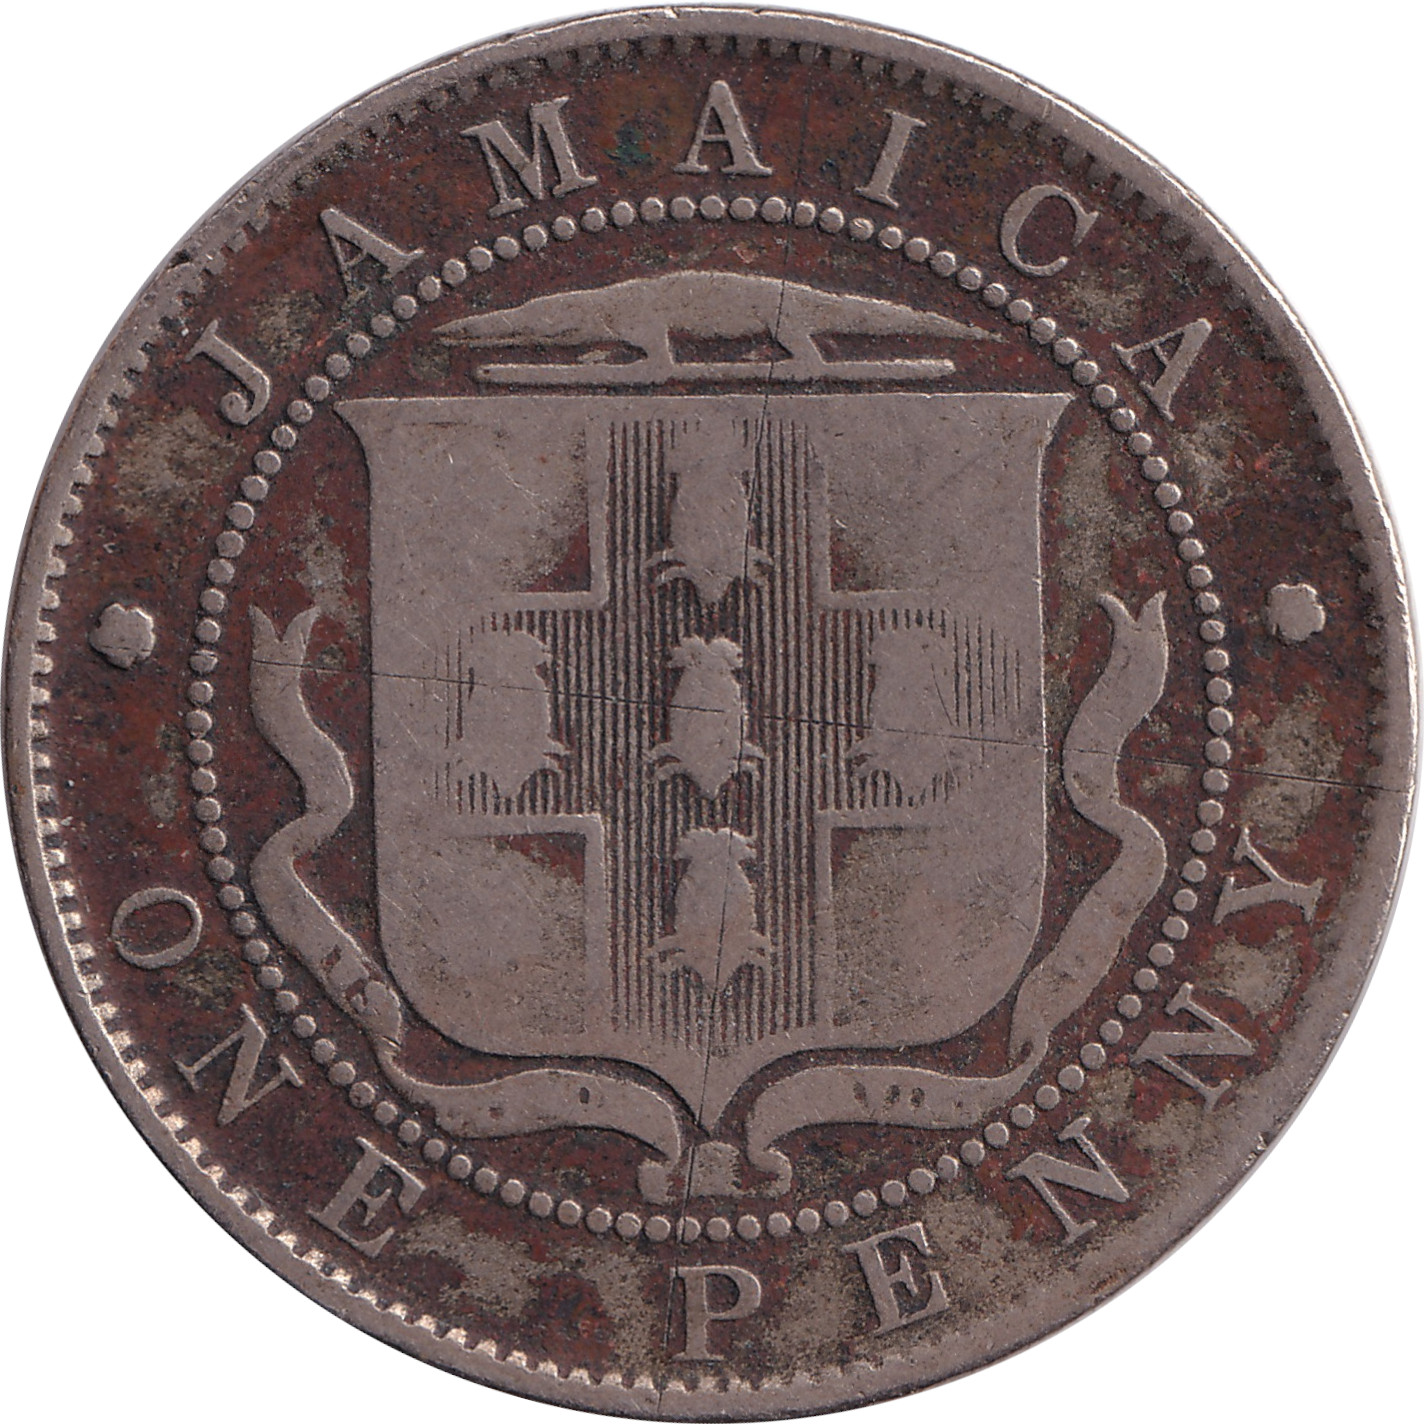 1 penny - Edward VII